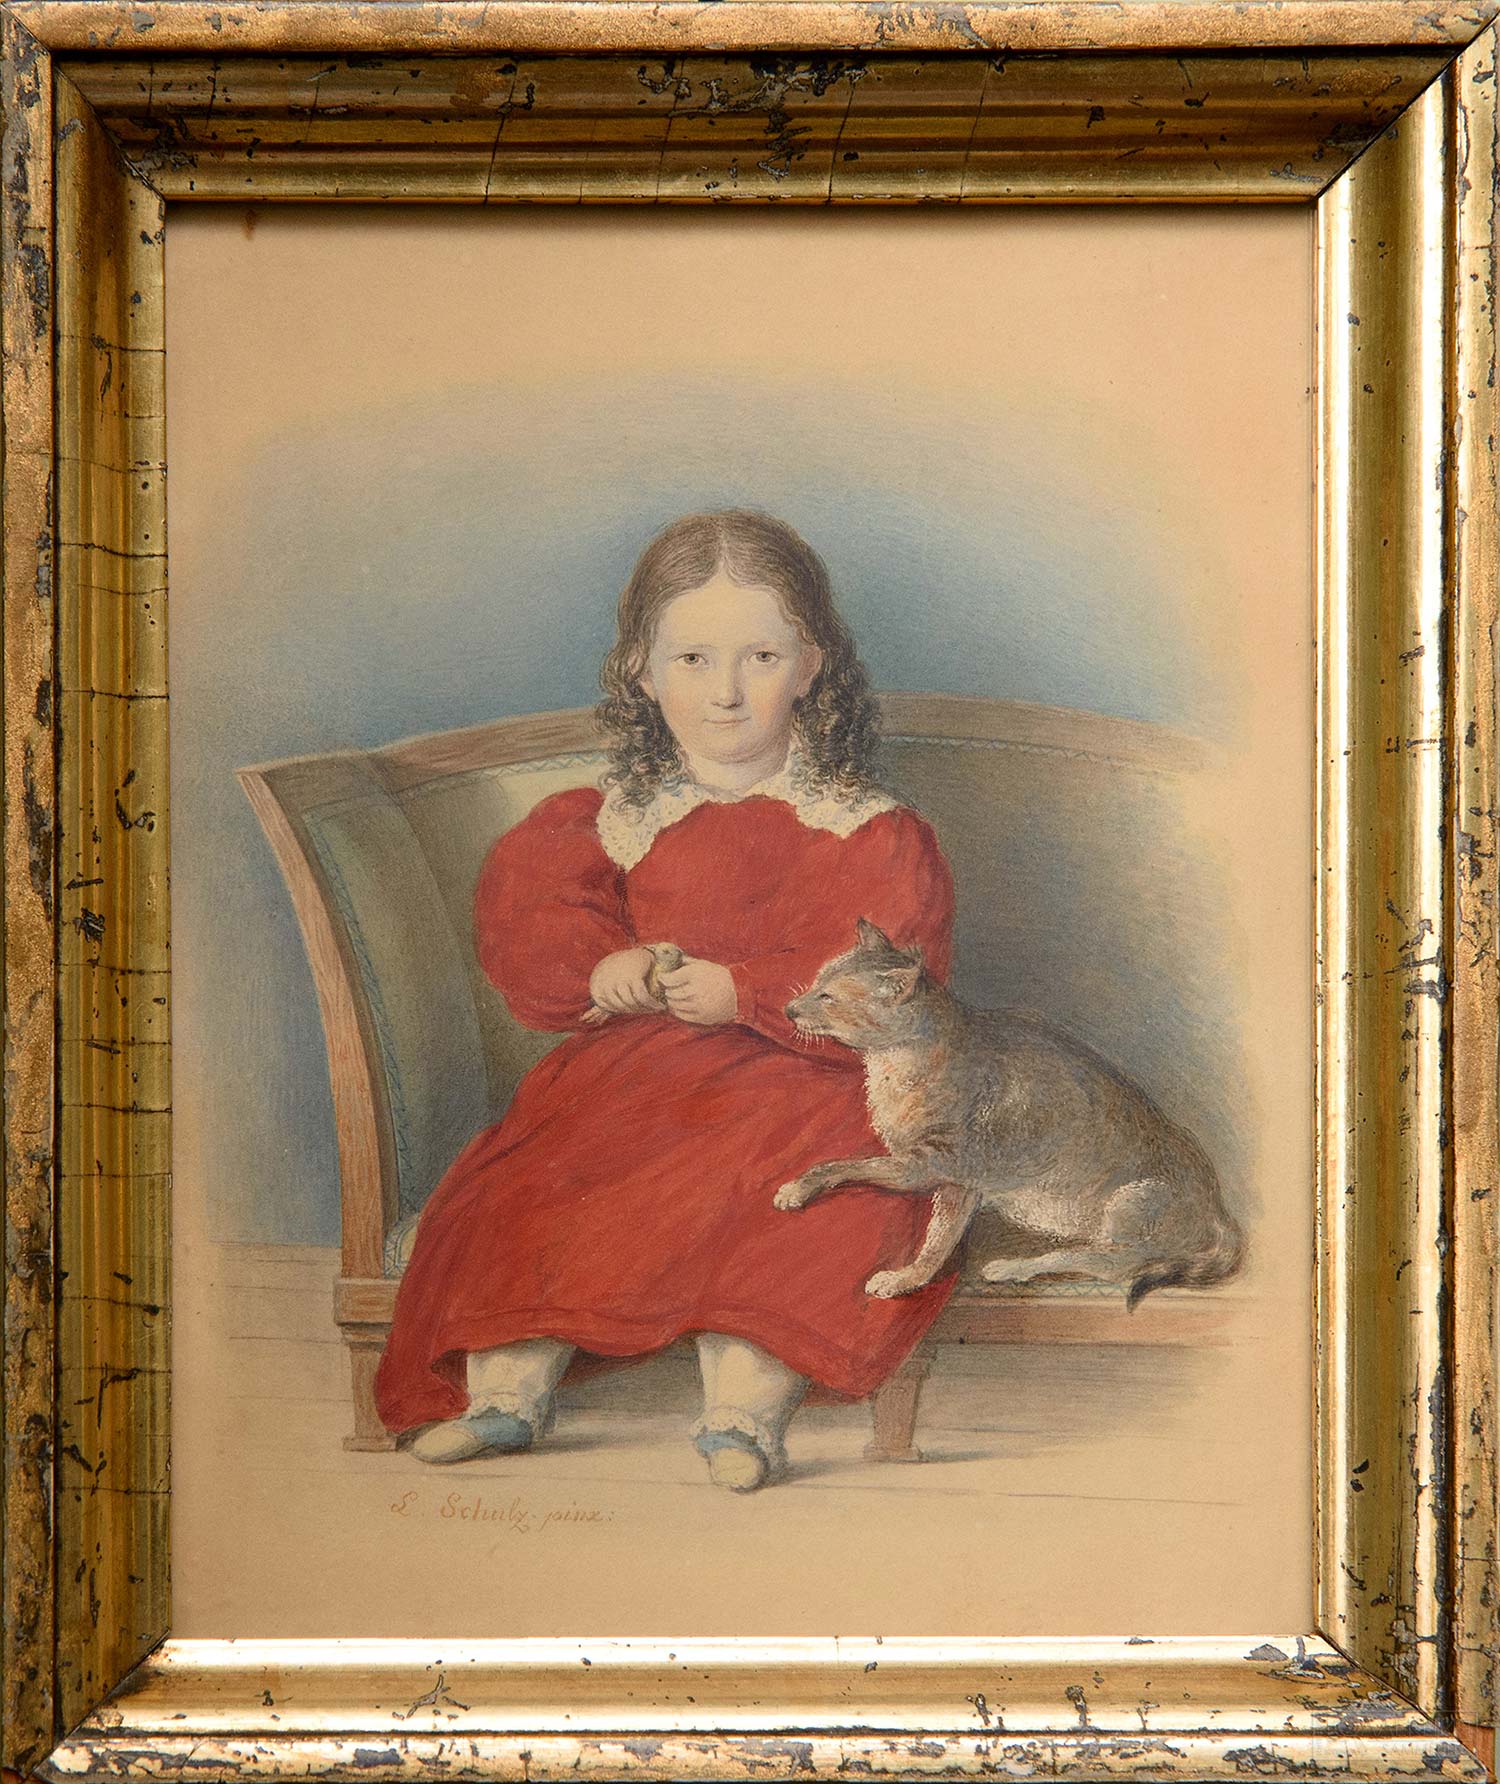 Шульц (Schulz), Леопольд (1804-1873) Портрет Анны Бельмонт с котом. 1830-е гг. (Собрание С. и Т. Подстаницких)